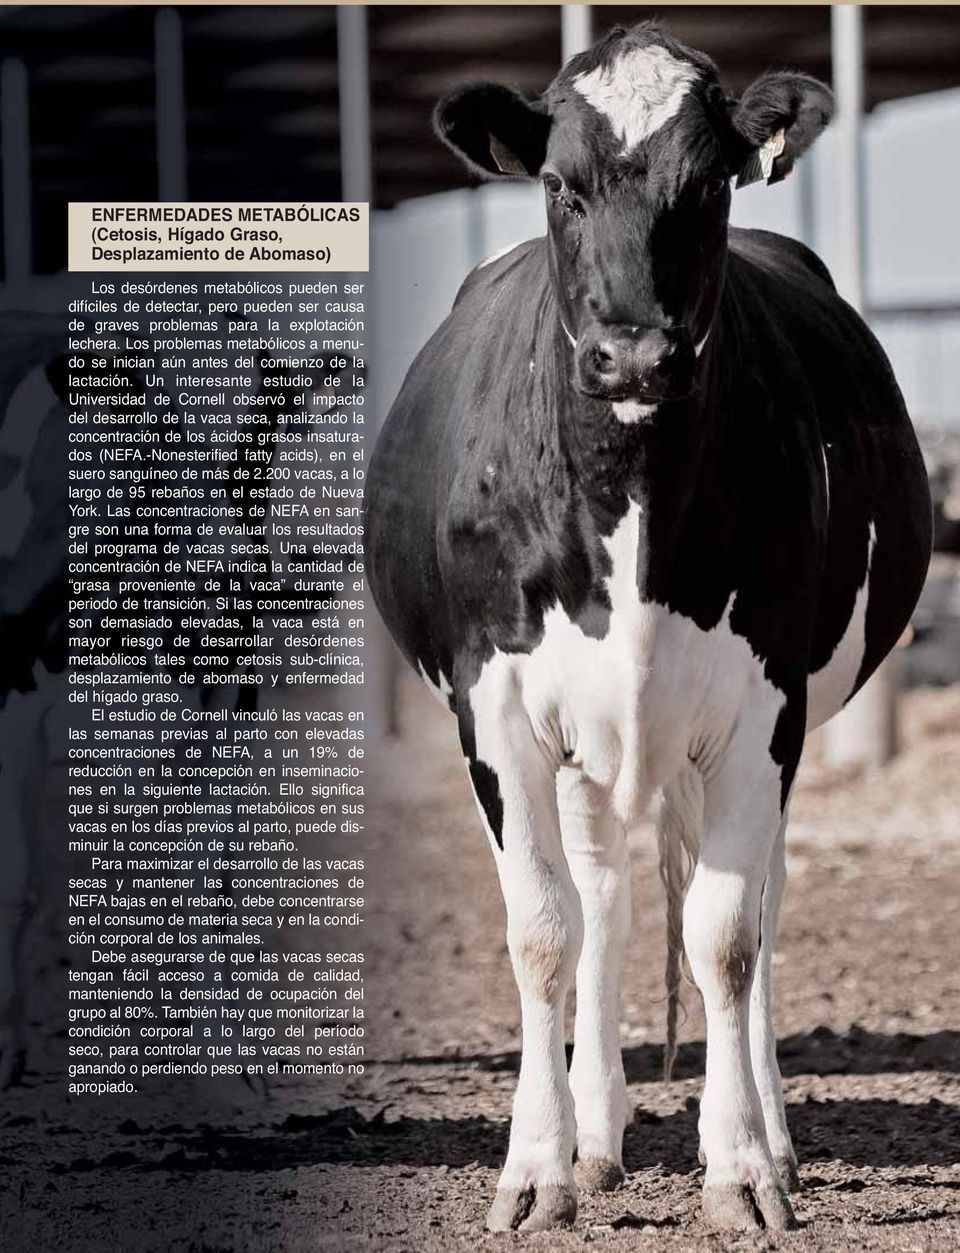 Un interesante estudio de la Universidad de Cornell observó el impacto del desarrollo de la vaca seca, analizando la concentración de los ácidos grasos insaturados (NEFA.